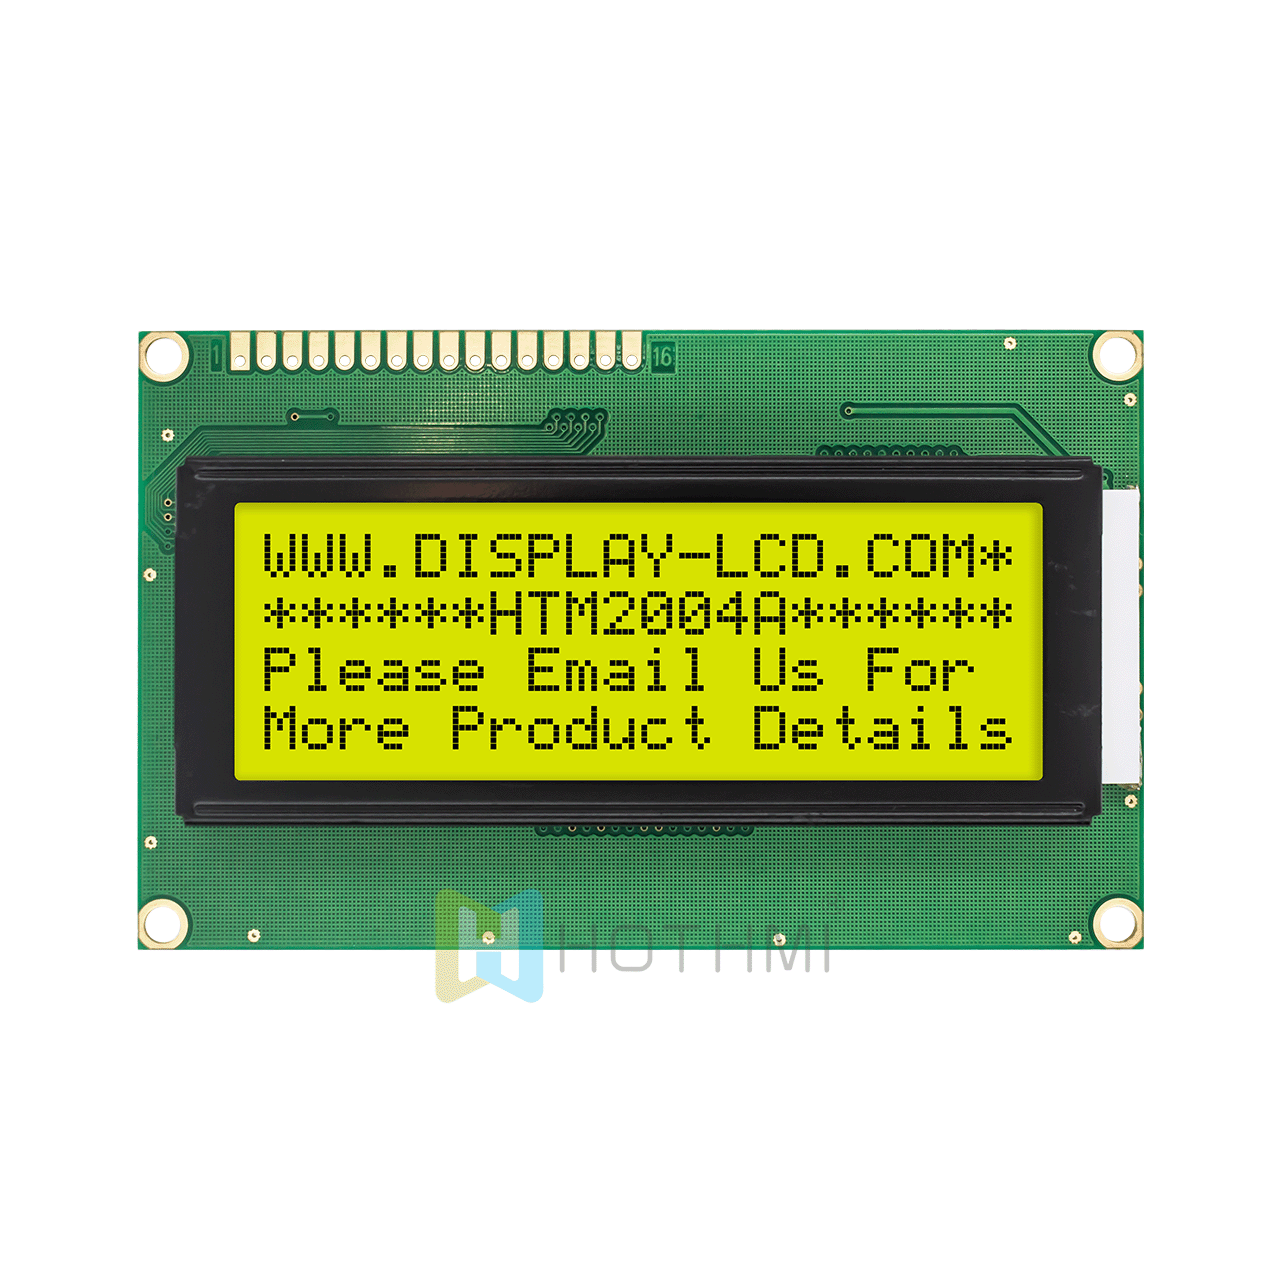  20x4 | 单色字符液晶显示屏| STN + | 带黄绿侧背光 | Arduino显示屏 | 半透反射式 | Adruino  | ST7066U | 3.3v/5.0v